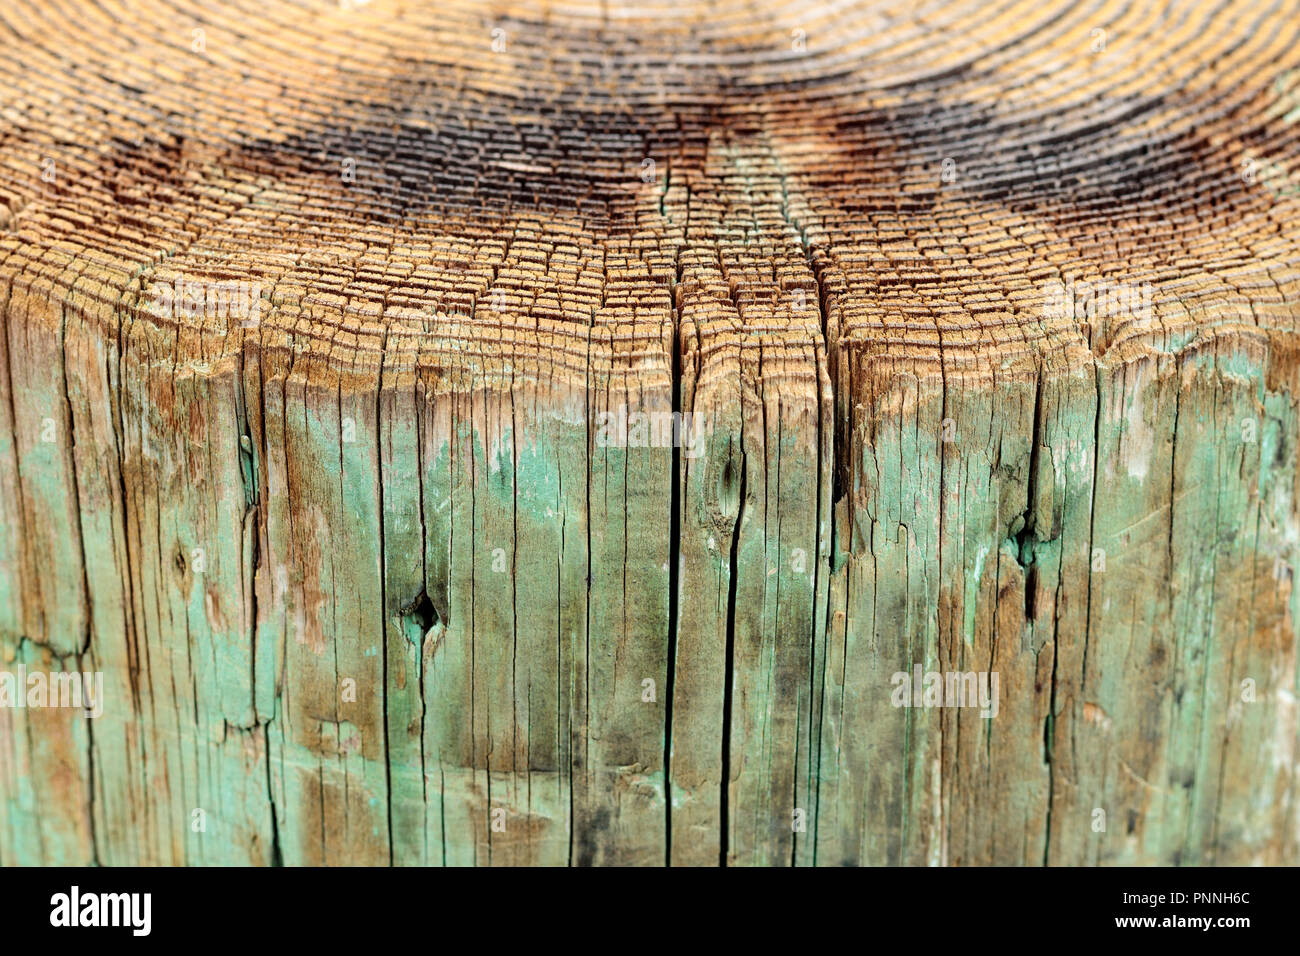 Oben Ansicht von Baumringen und Seitenansicht verwittertes Holz Pier, ein Hintergrund vintage grunge Textur der blasse Farbe, eine detaillierte raue Oberfläche vertikale l Stockfoto